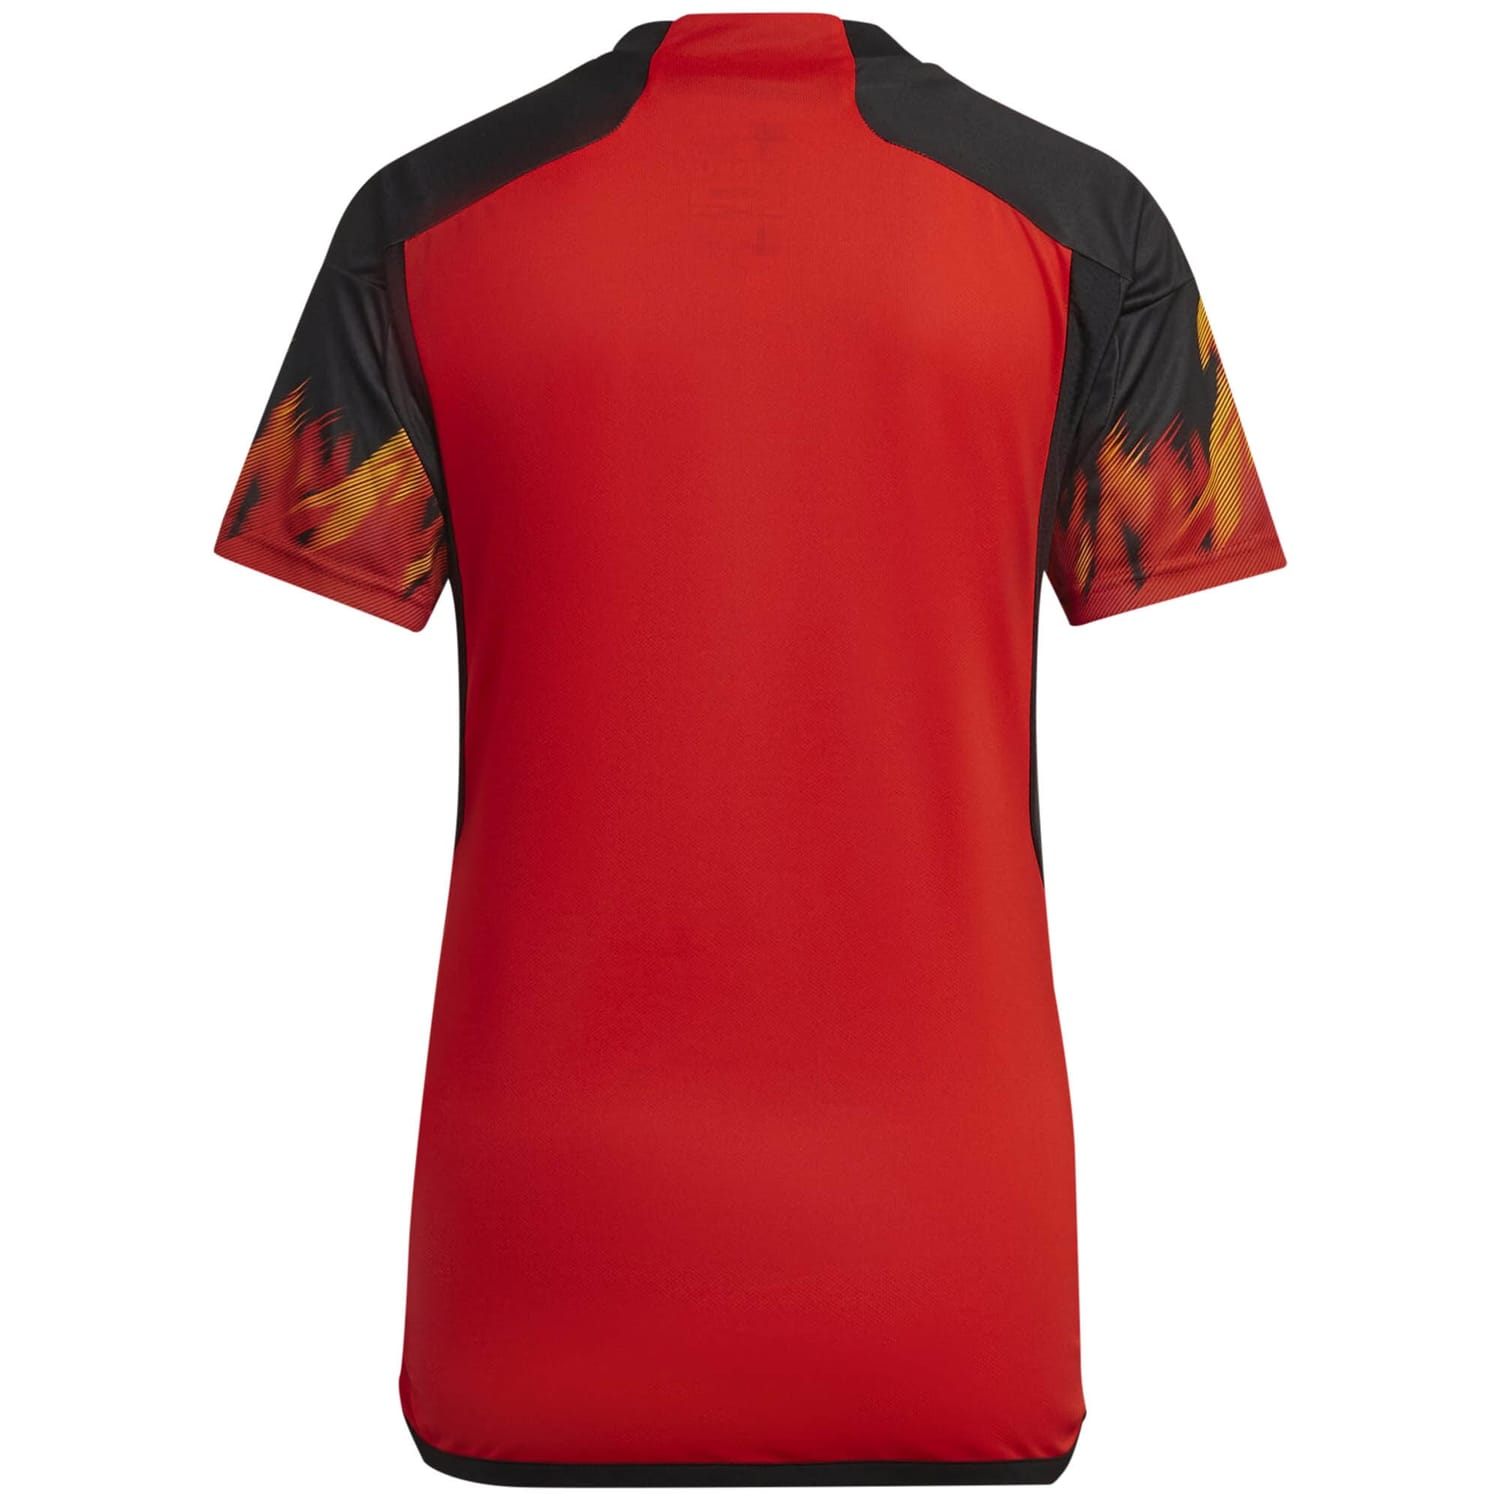 Belgium National Team Home Jersey Shirt 2022 for Women